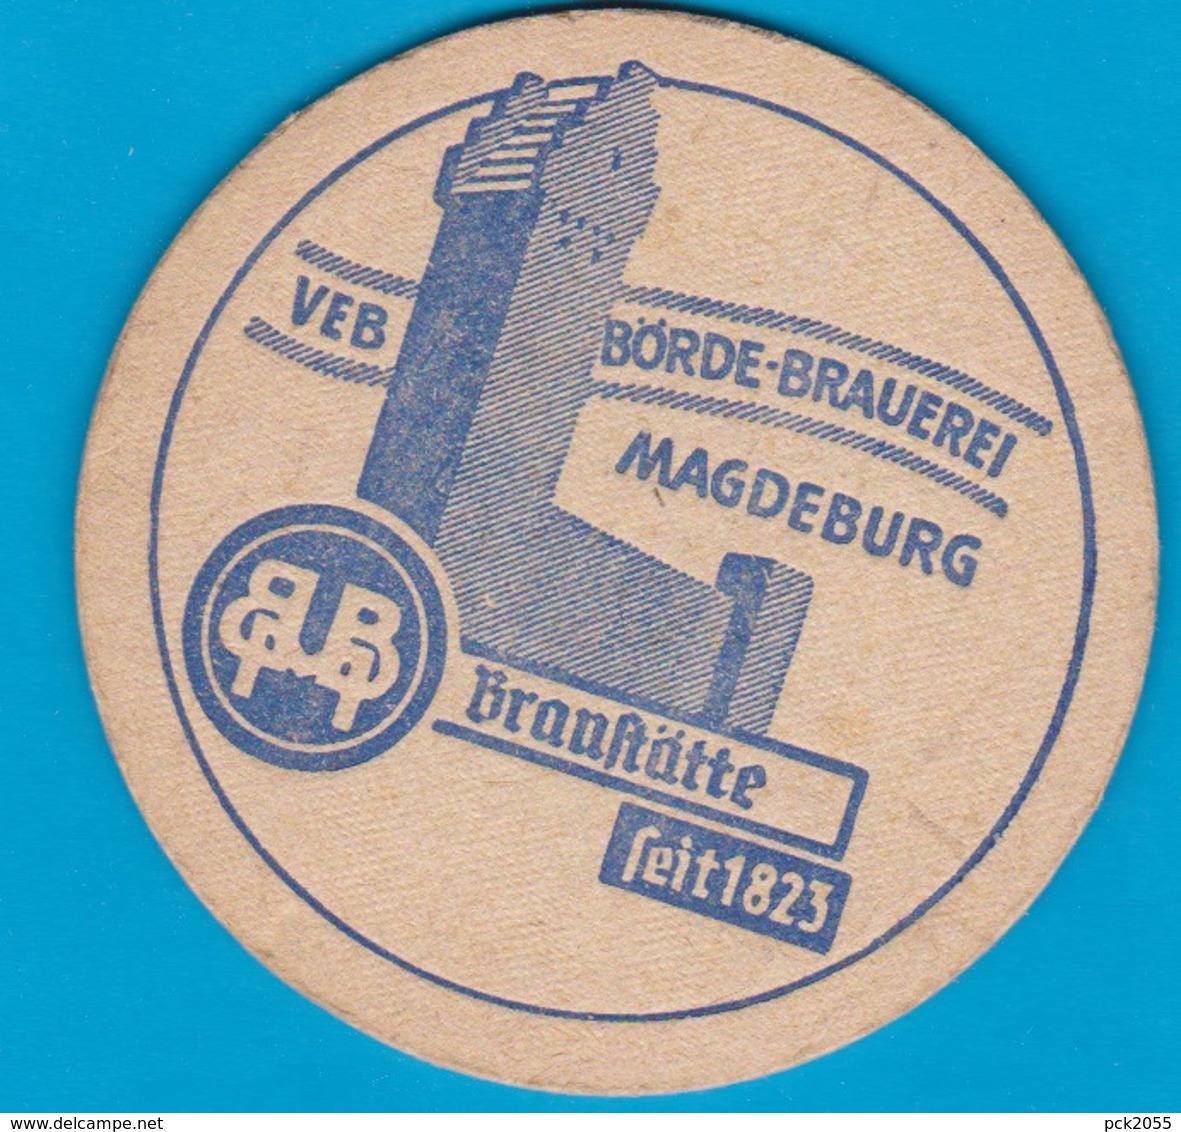 Börde Brauerei Magdeburg ( Bd 2772 ) - Bierdeckel